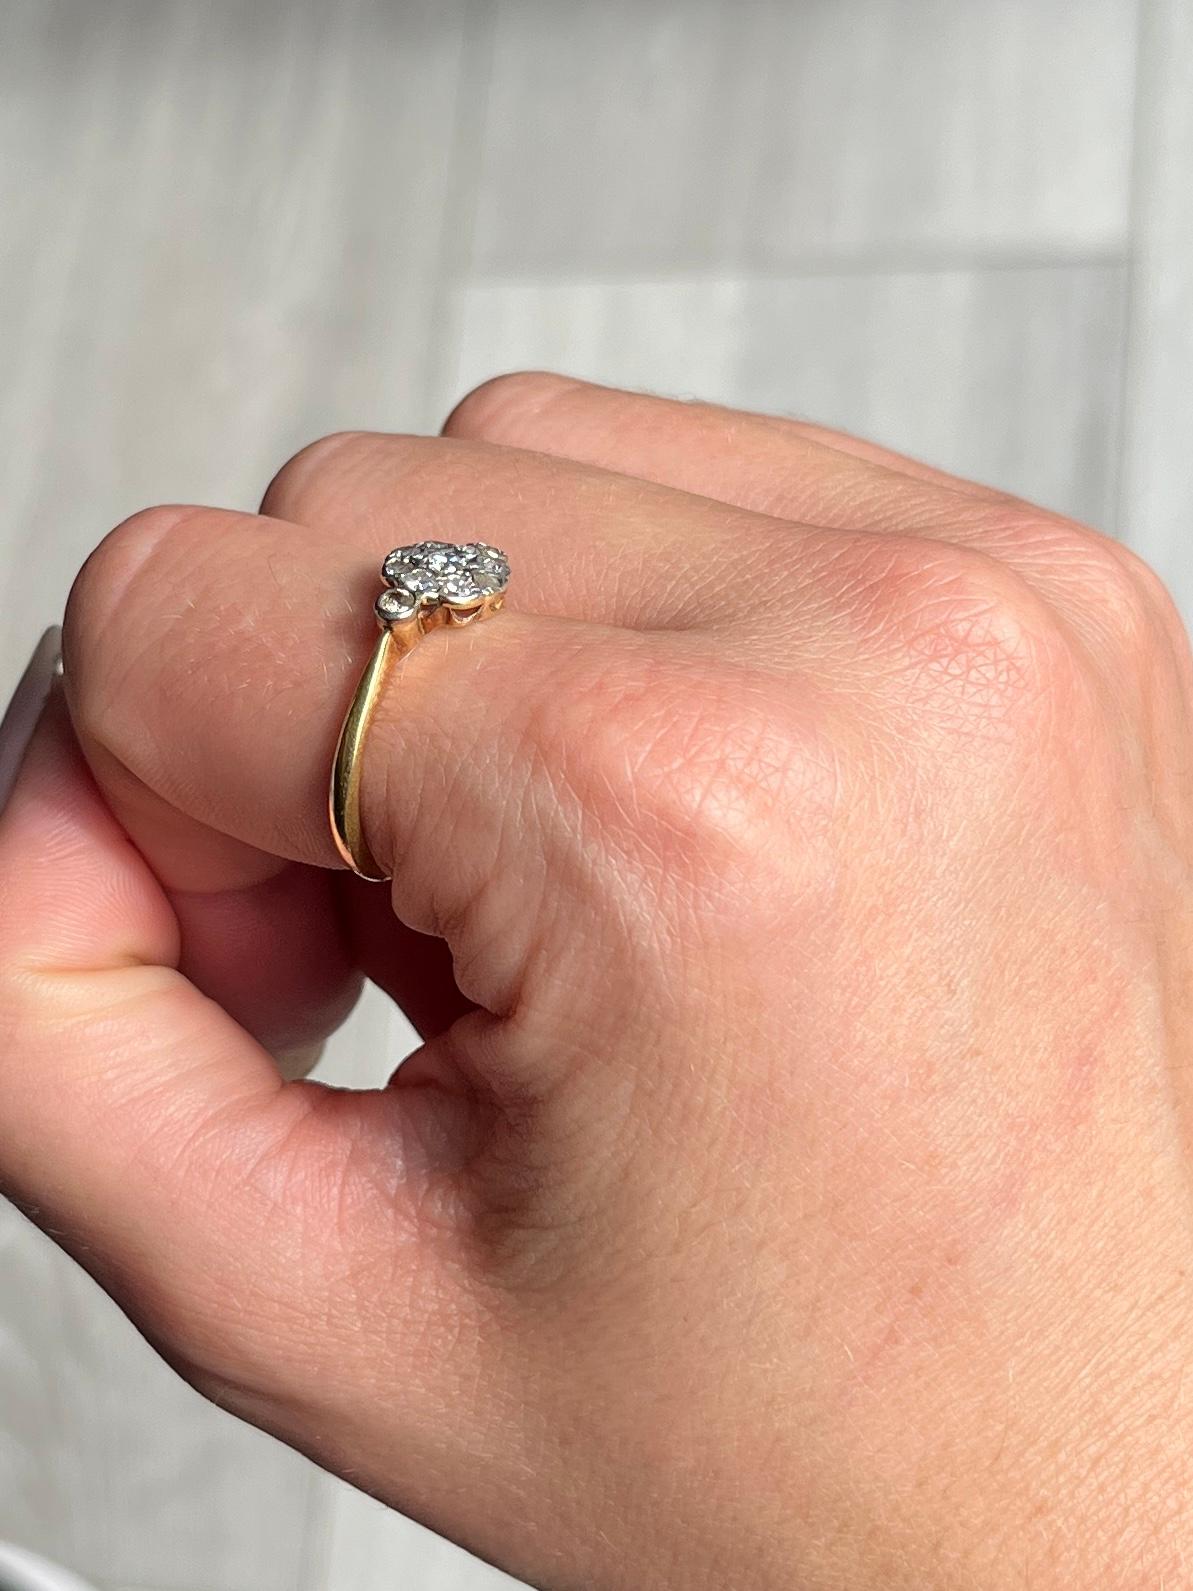 Klassisch funkelnder Diamant-Cluster-Ring mit zarten Diamantschultern, gefasst in Platin auf einem 18-karätigen Goldband. Diamanten insgesamt ca. 55 Punkte.

Ringgröße: P oder 7 3/4
Durchmesser des Clusters: 9 mm

Gewicht: 2,68g